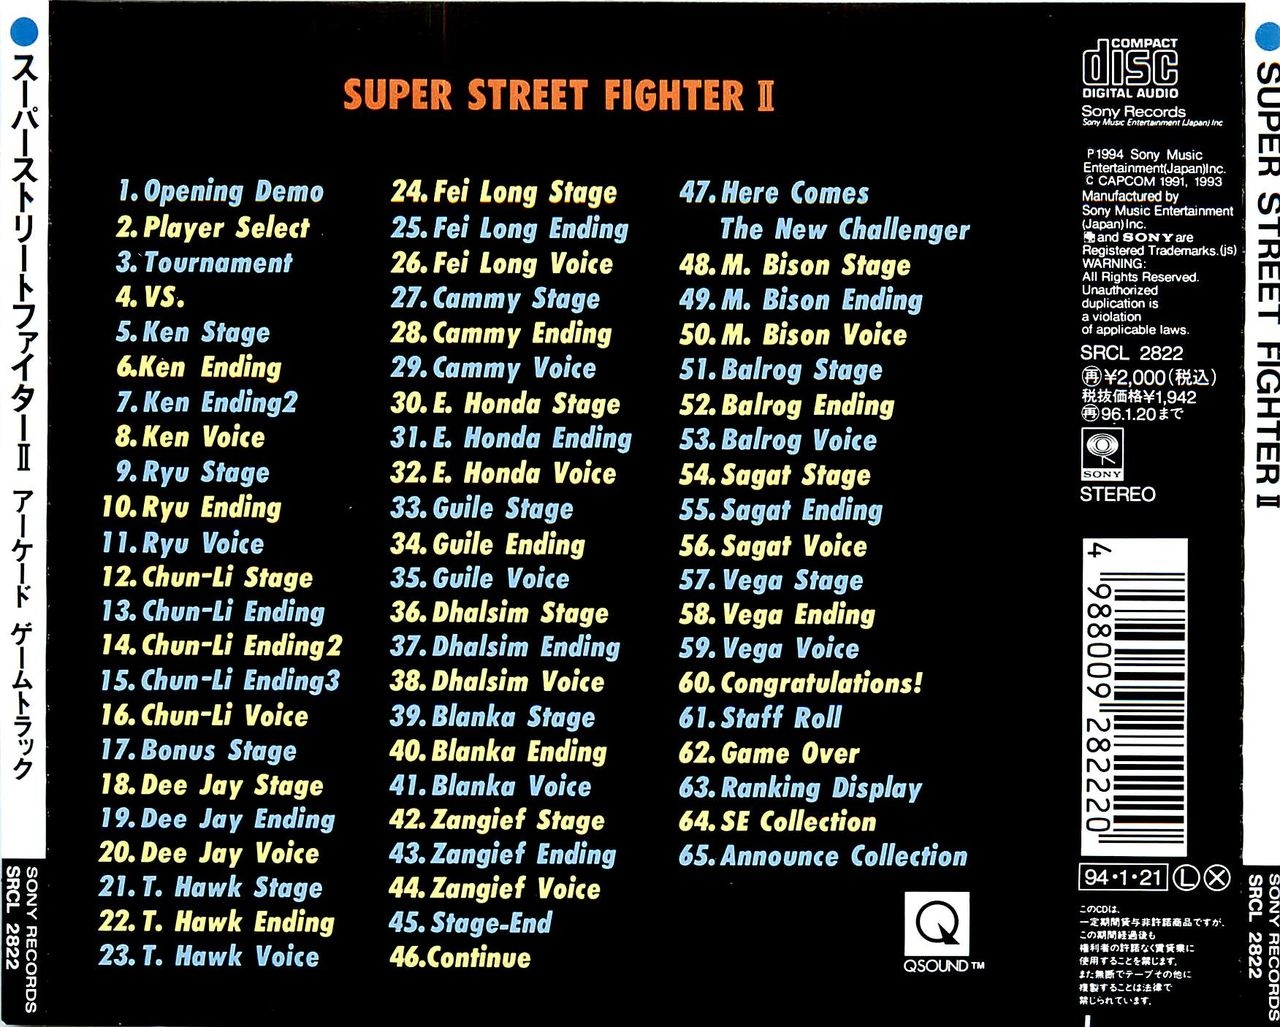 SUPER STREET FIGHTER II Arcade Gametrack booklet 20